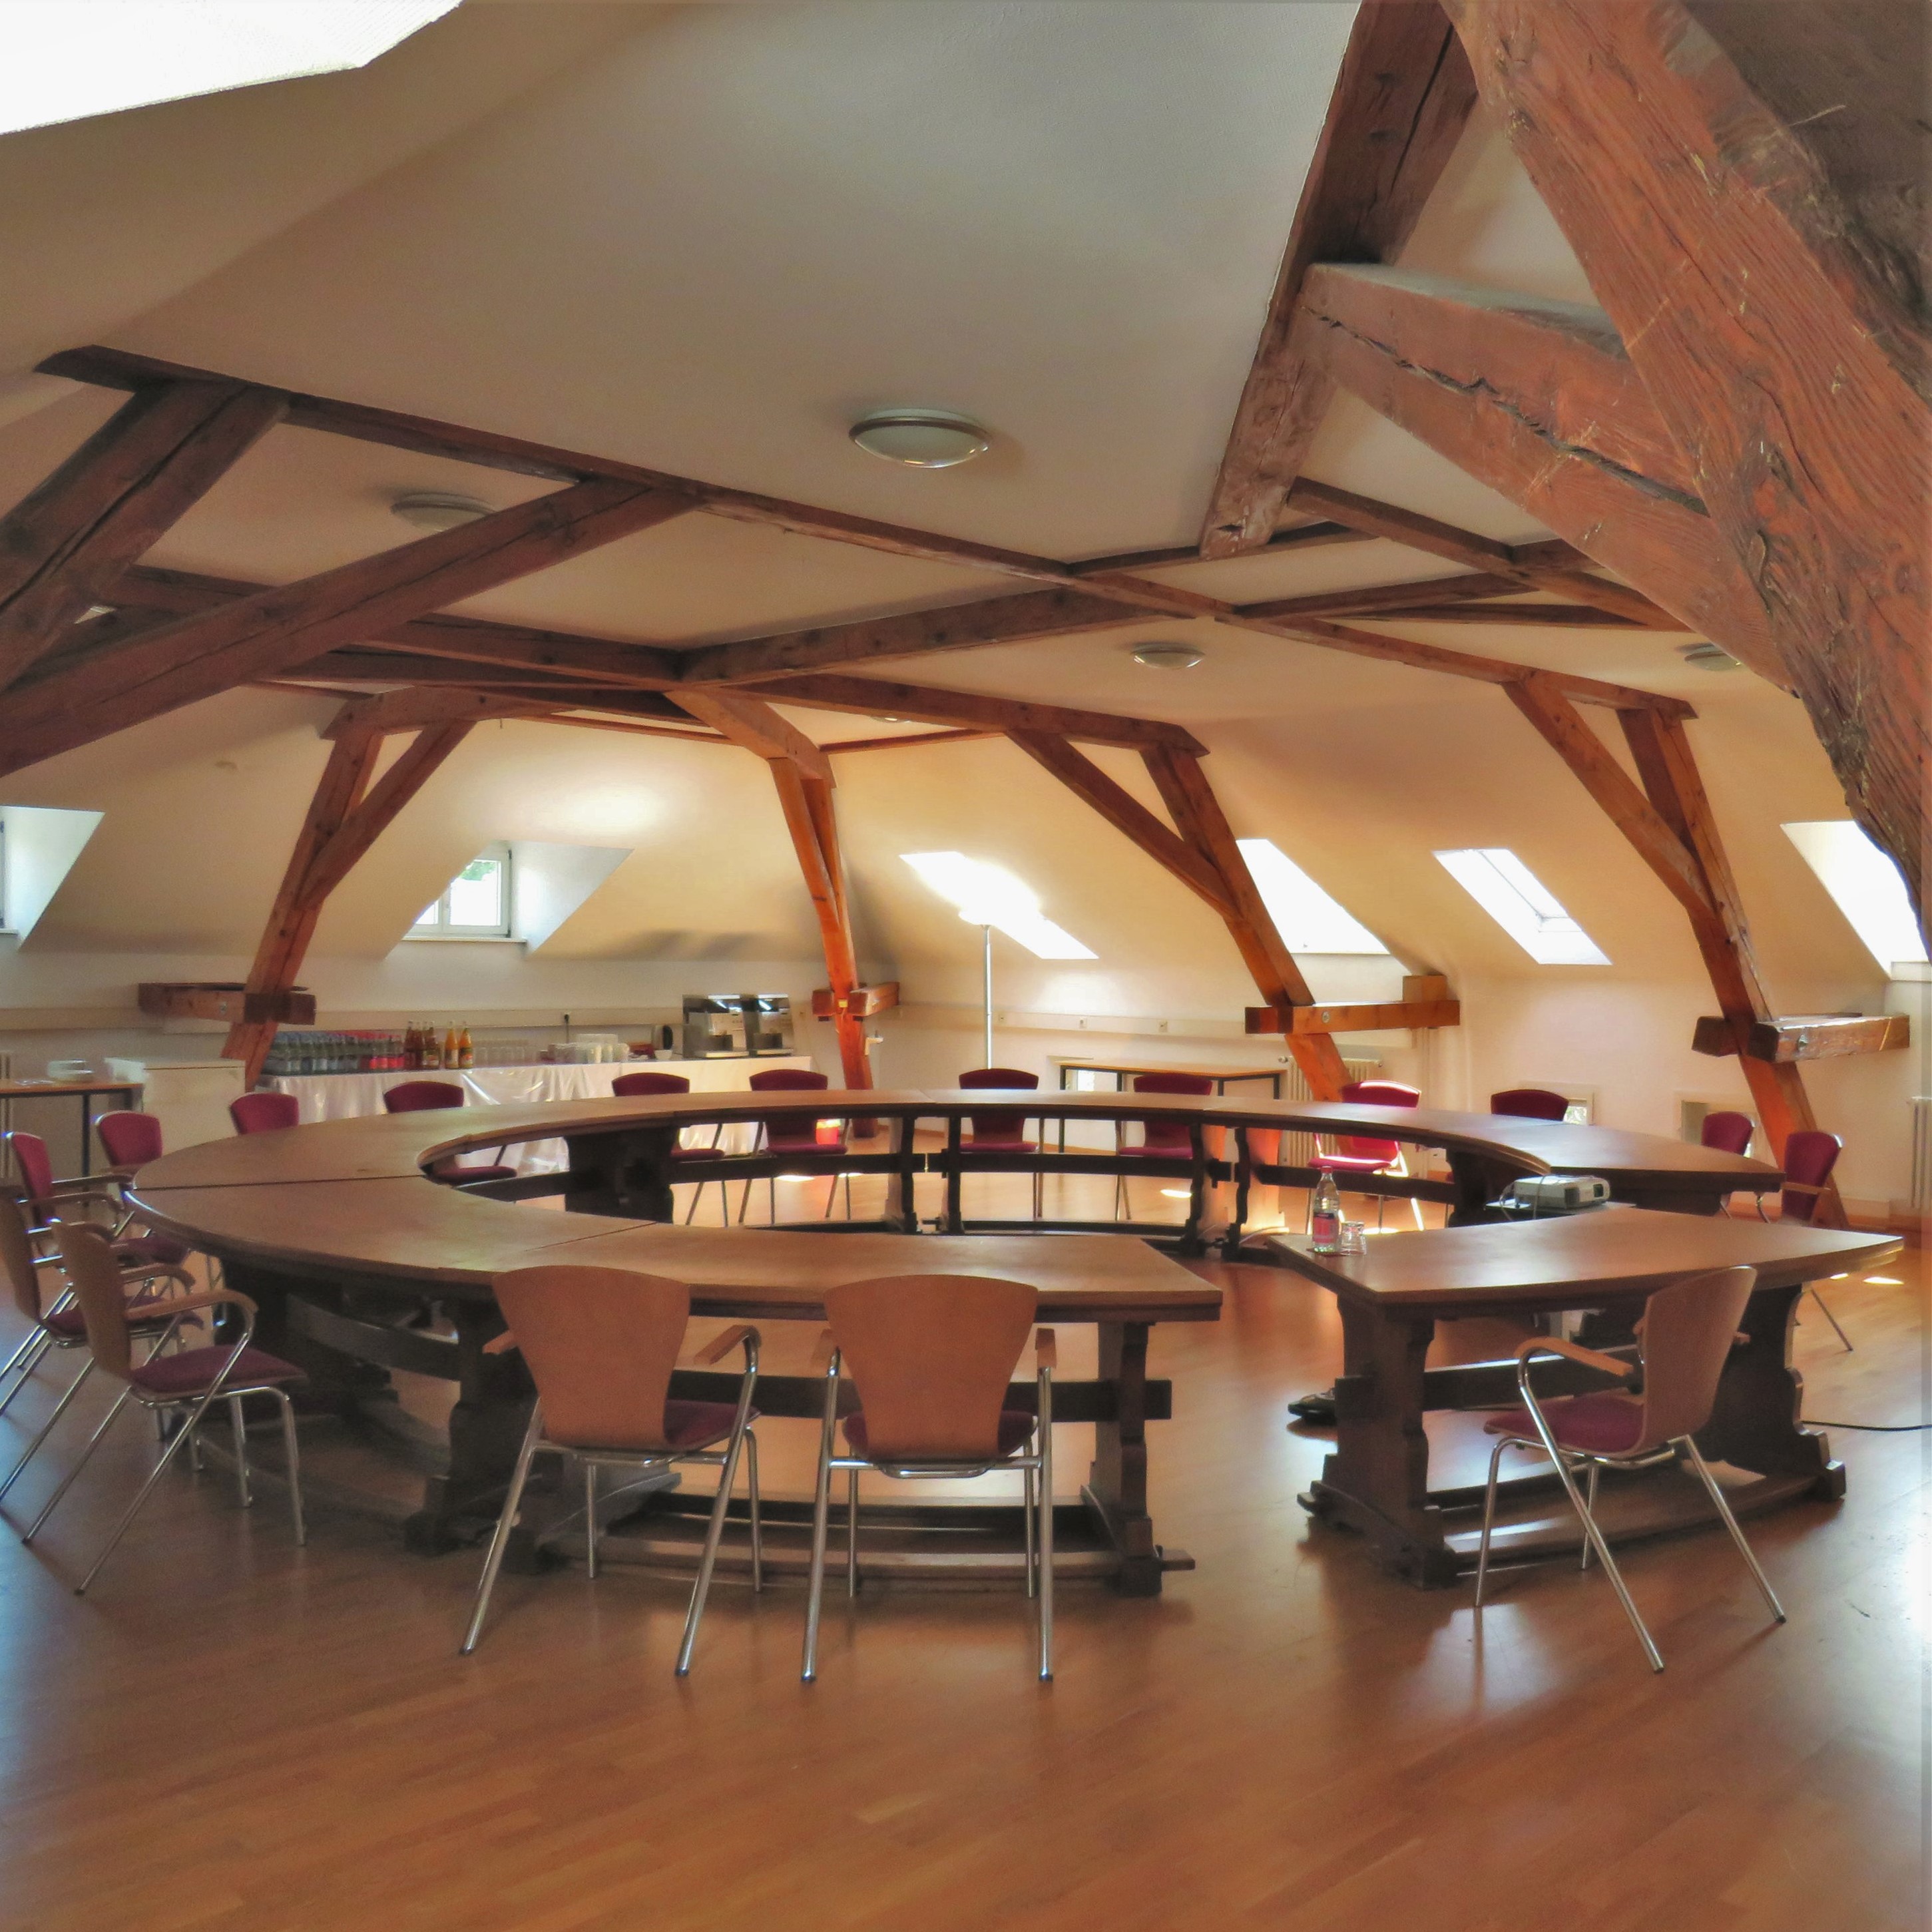 Ein runder Holztisch steht in der Mitte eines Dachgeschossraumes